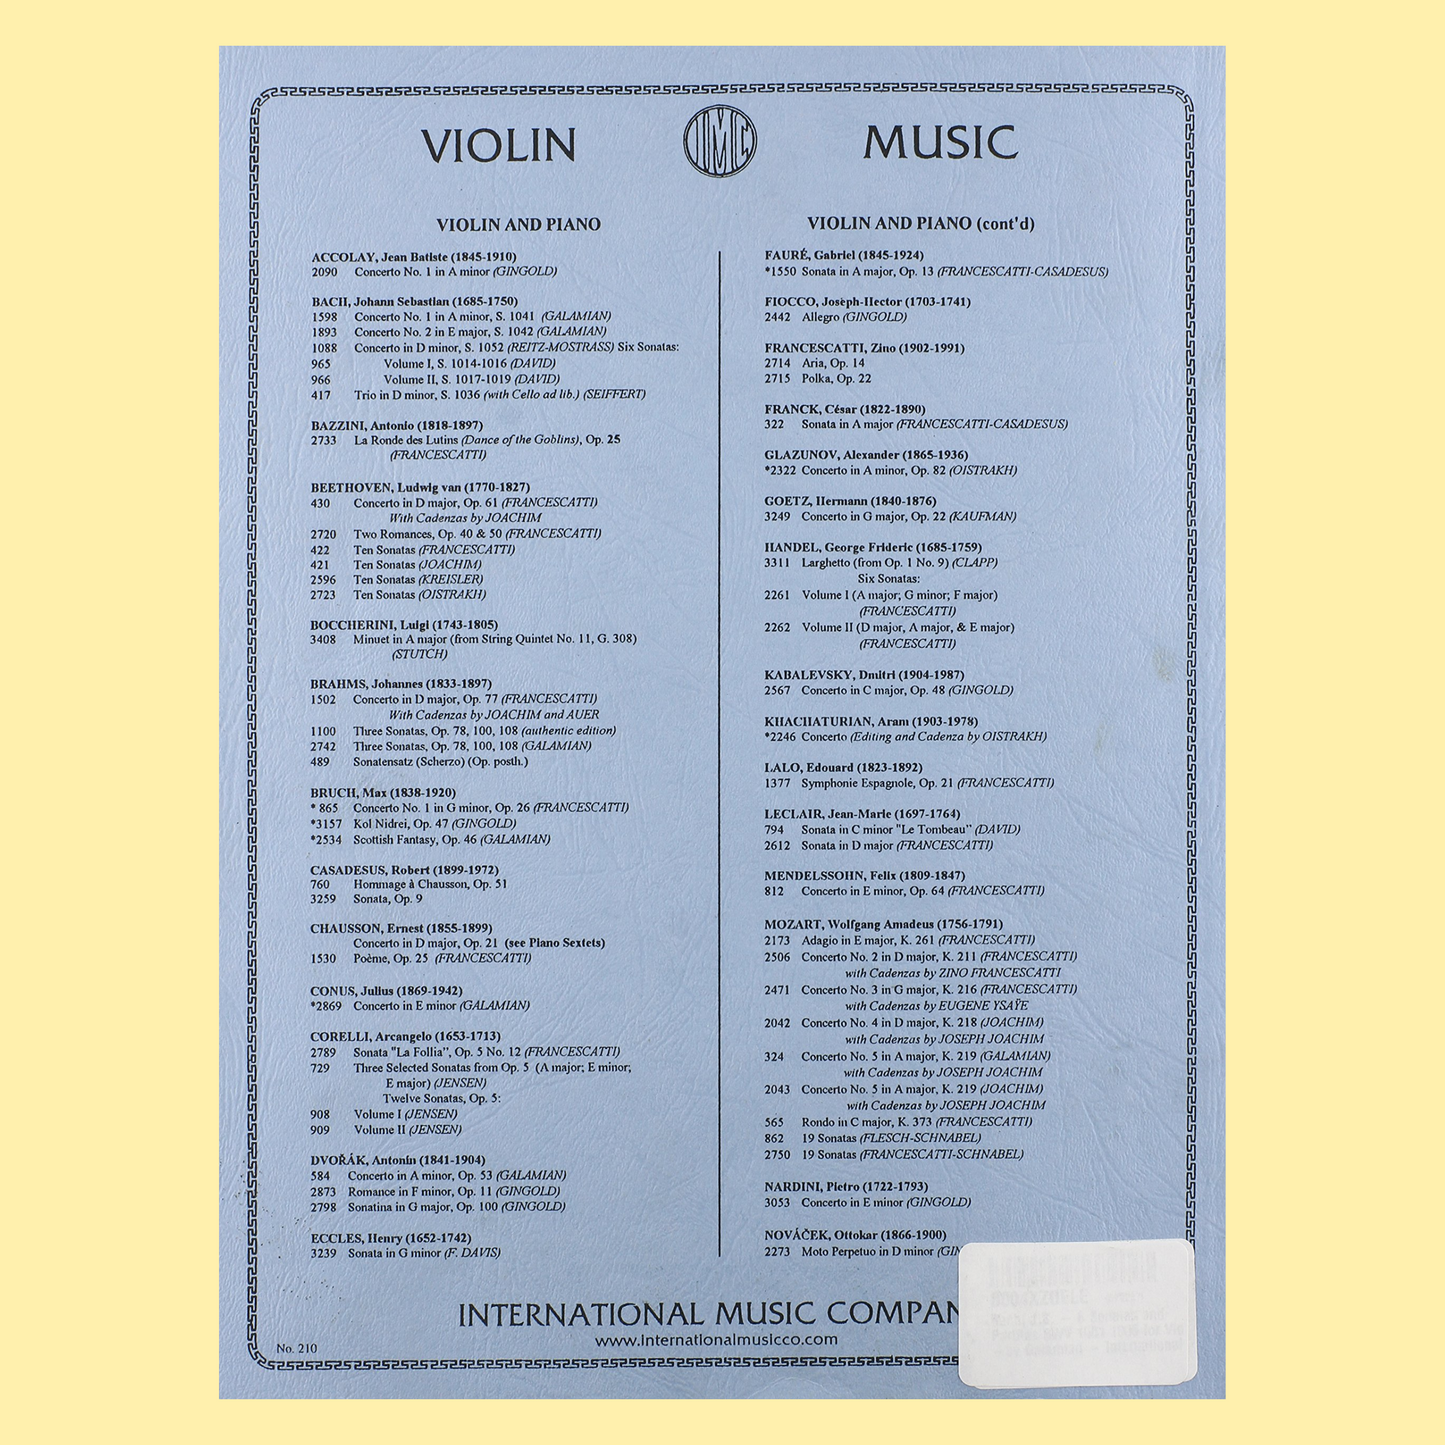 J.S Bach - 6 Sonatas & Partitas Violin Book